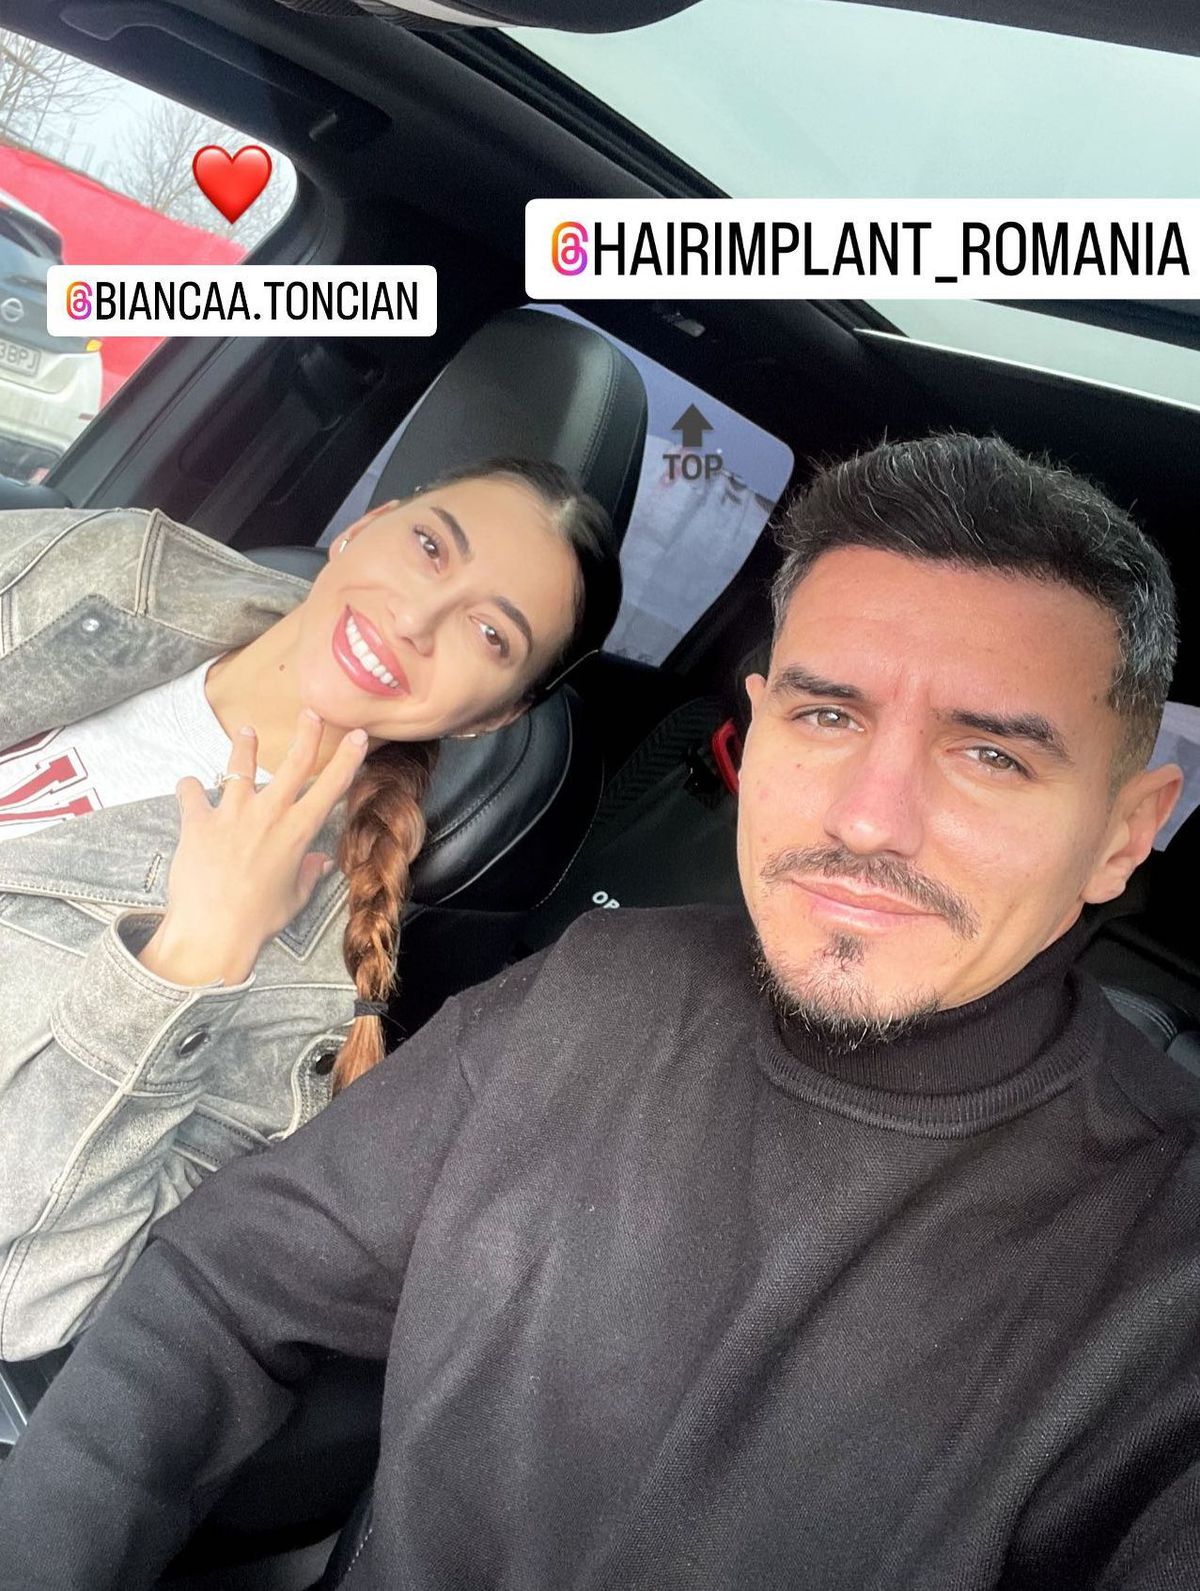 FOTO Romario Benzar, implant de păr și imagini cu Bianca, soția lui